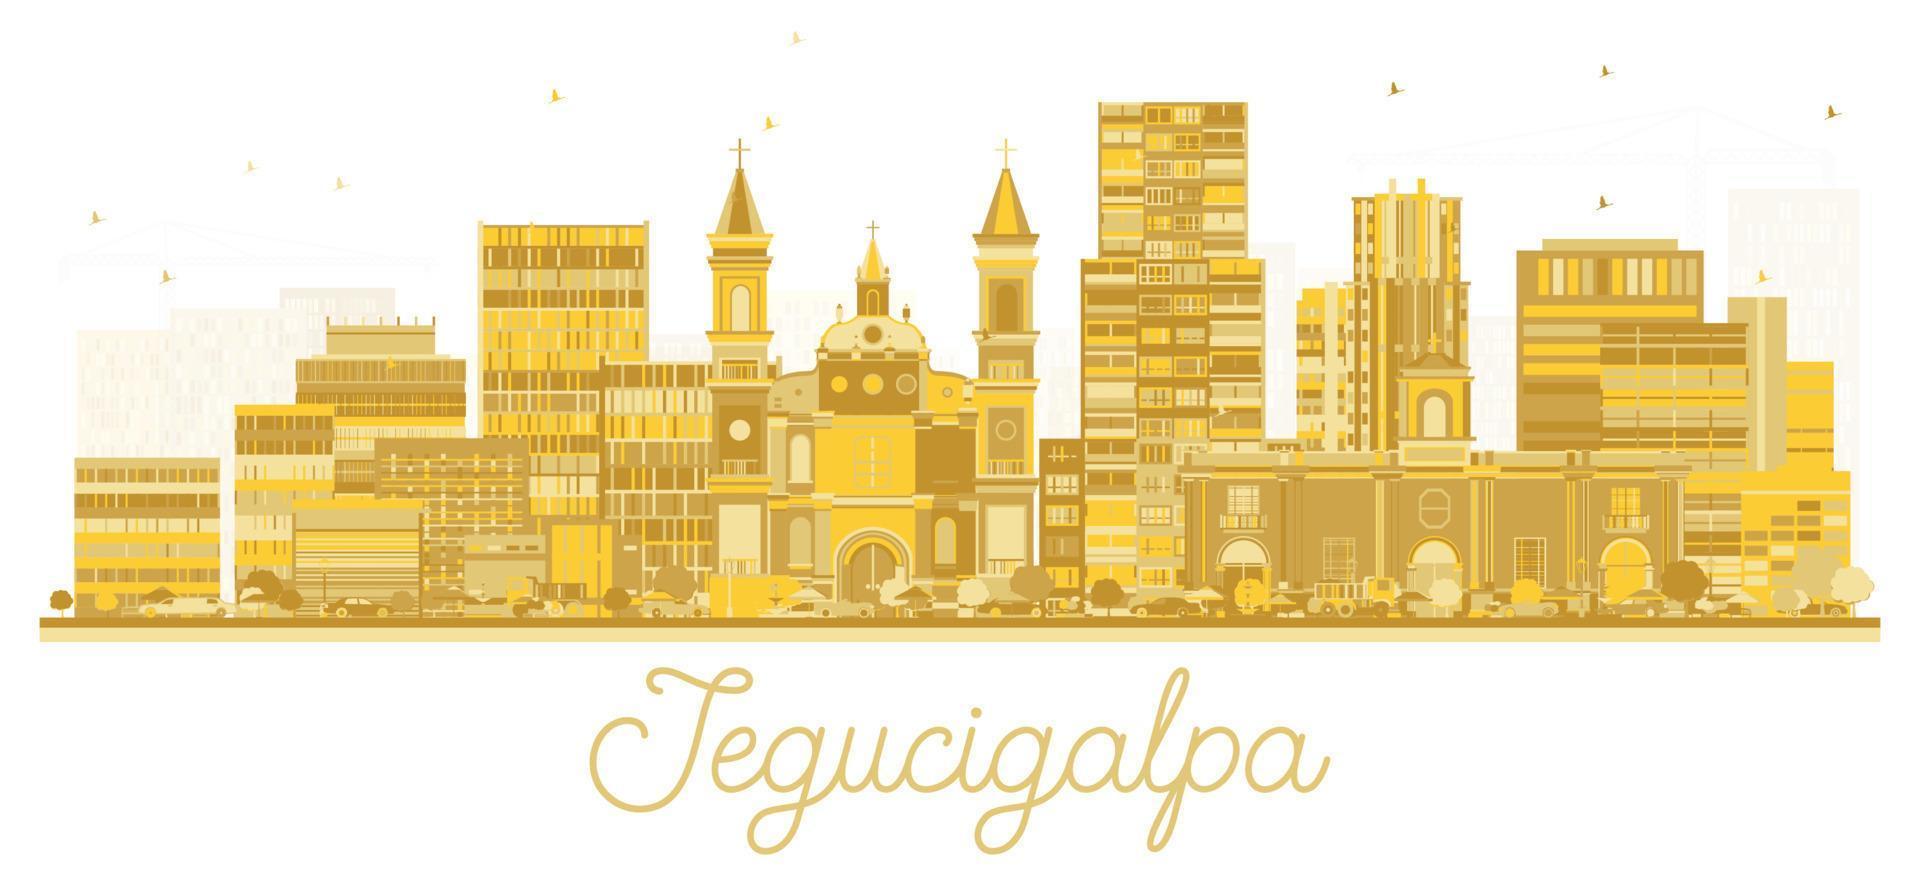 silhueta do horizonte da cidade de tegucigalpa honduras com edifícios dourados isolados no branco. vetor